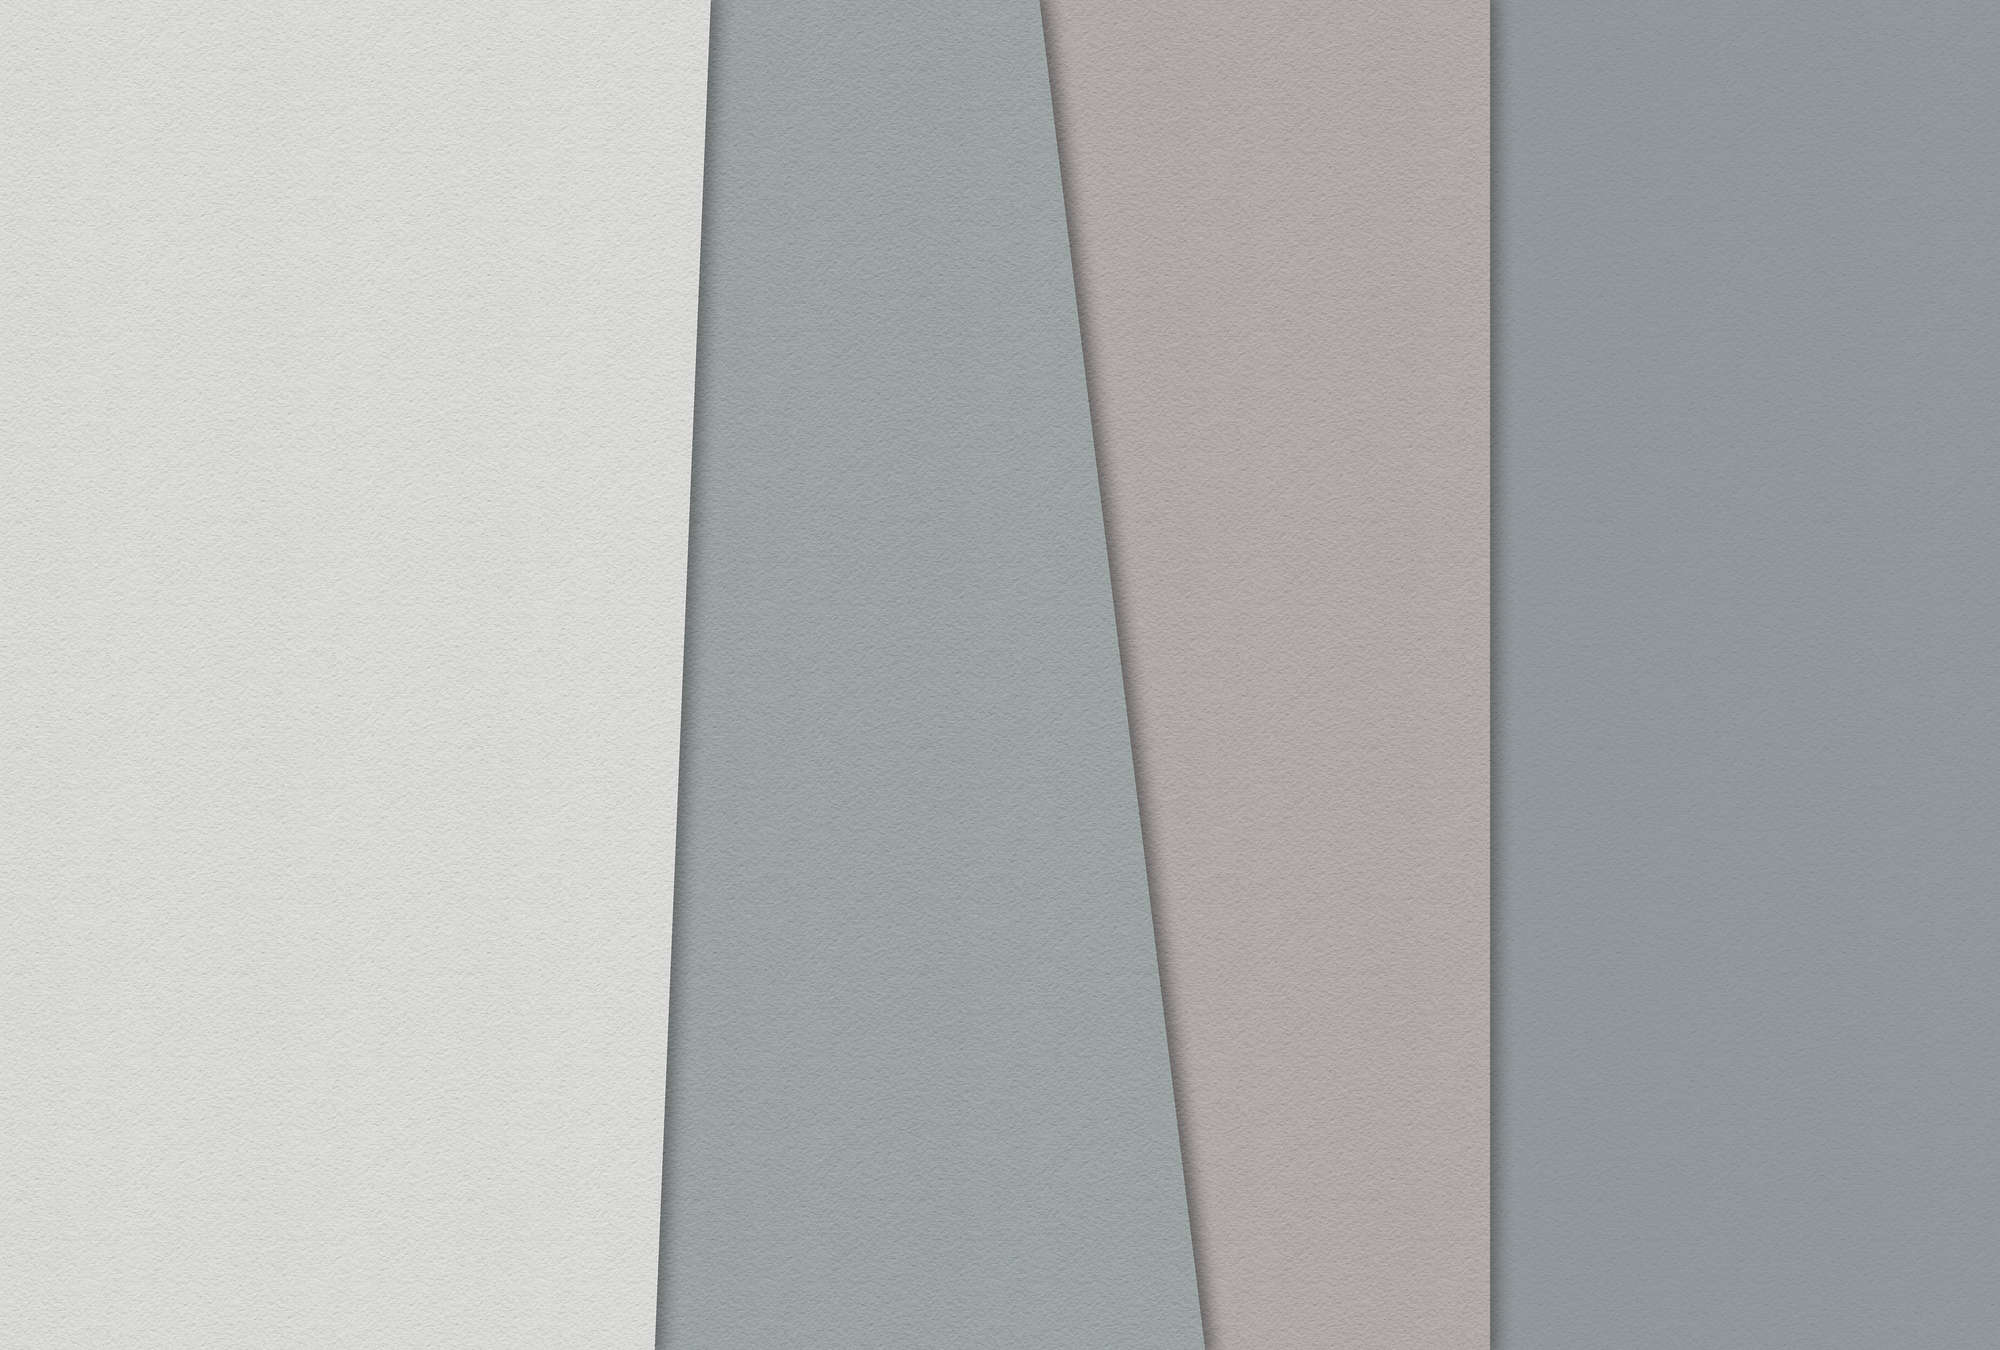             Papel estratificado 1 - Papel pintado gráfico con zonas de color en estructura de papel hecho a mano - Azul, Crema | Vellón liso de primera calidad
        